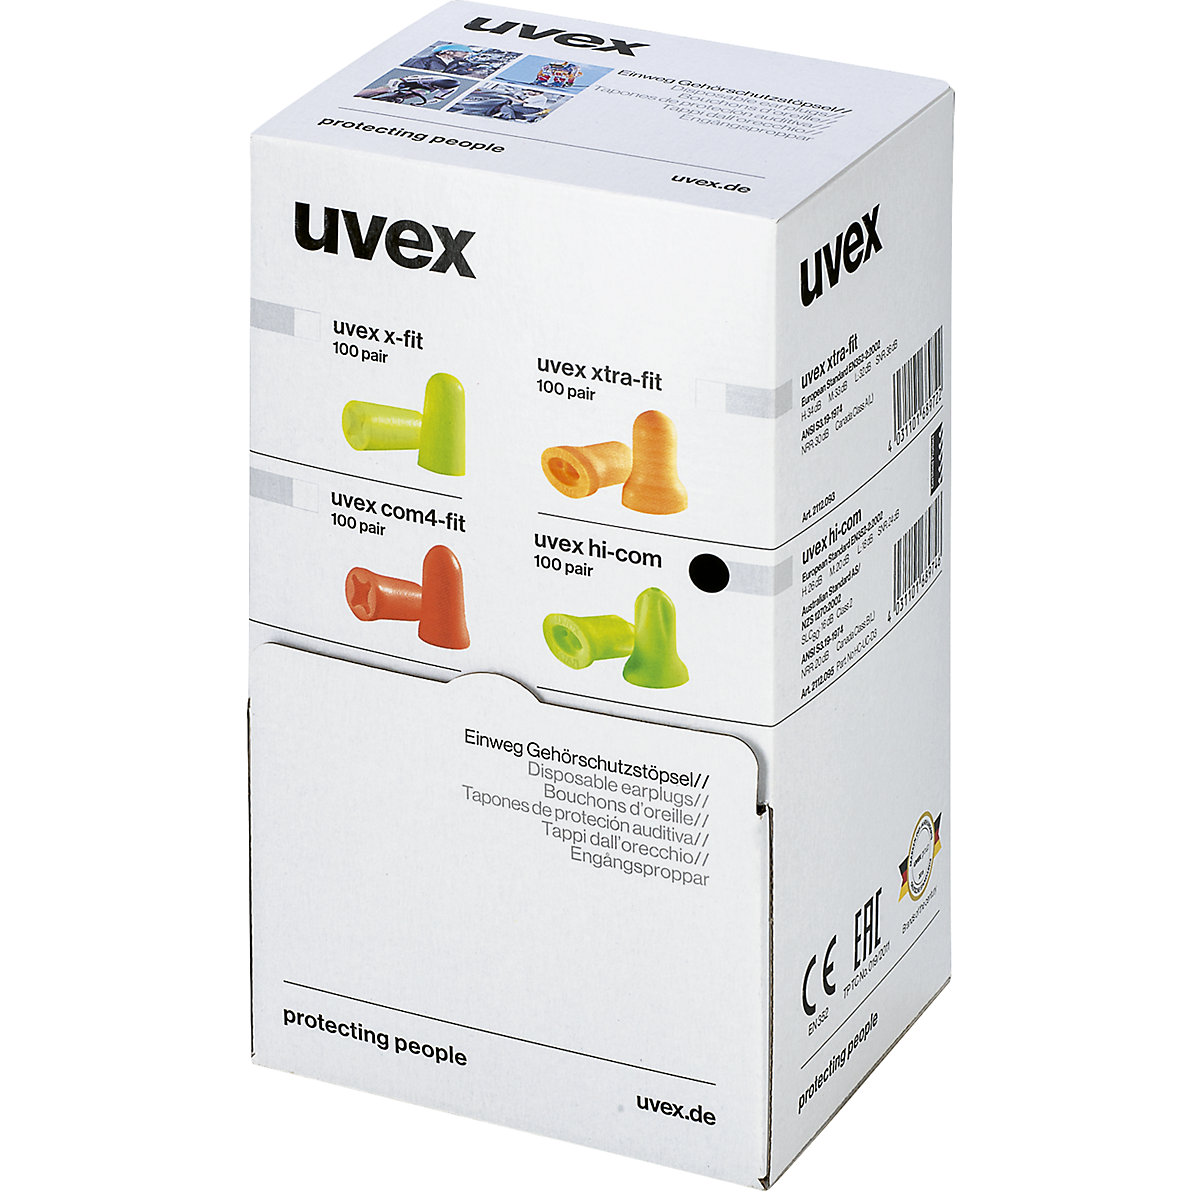 Tappi auricolari protettivi hi-com – Uvex